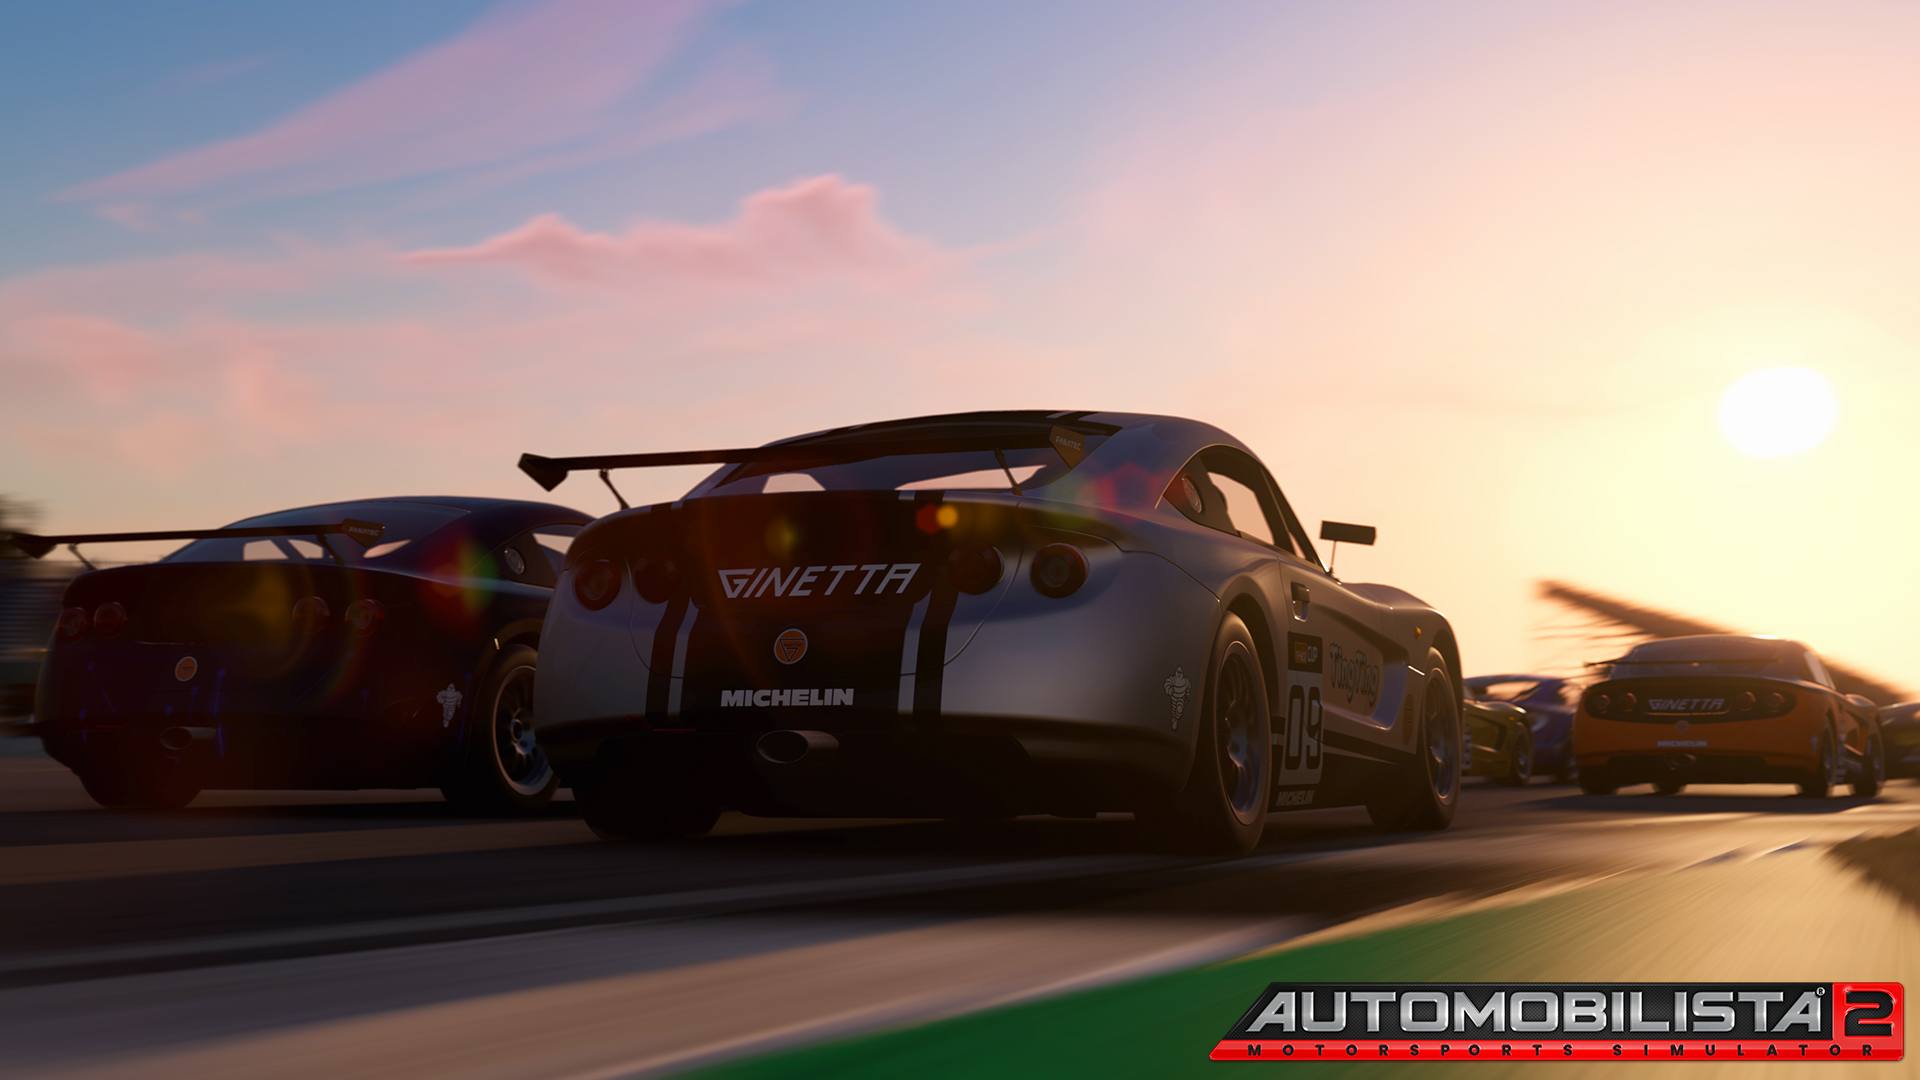 More information about "Automobilista 2 Gennaio 2021 Development Update"